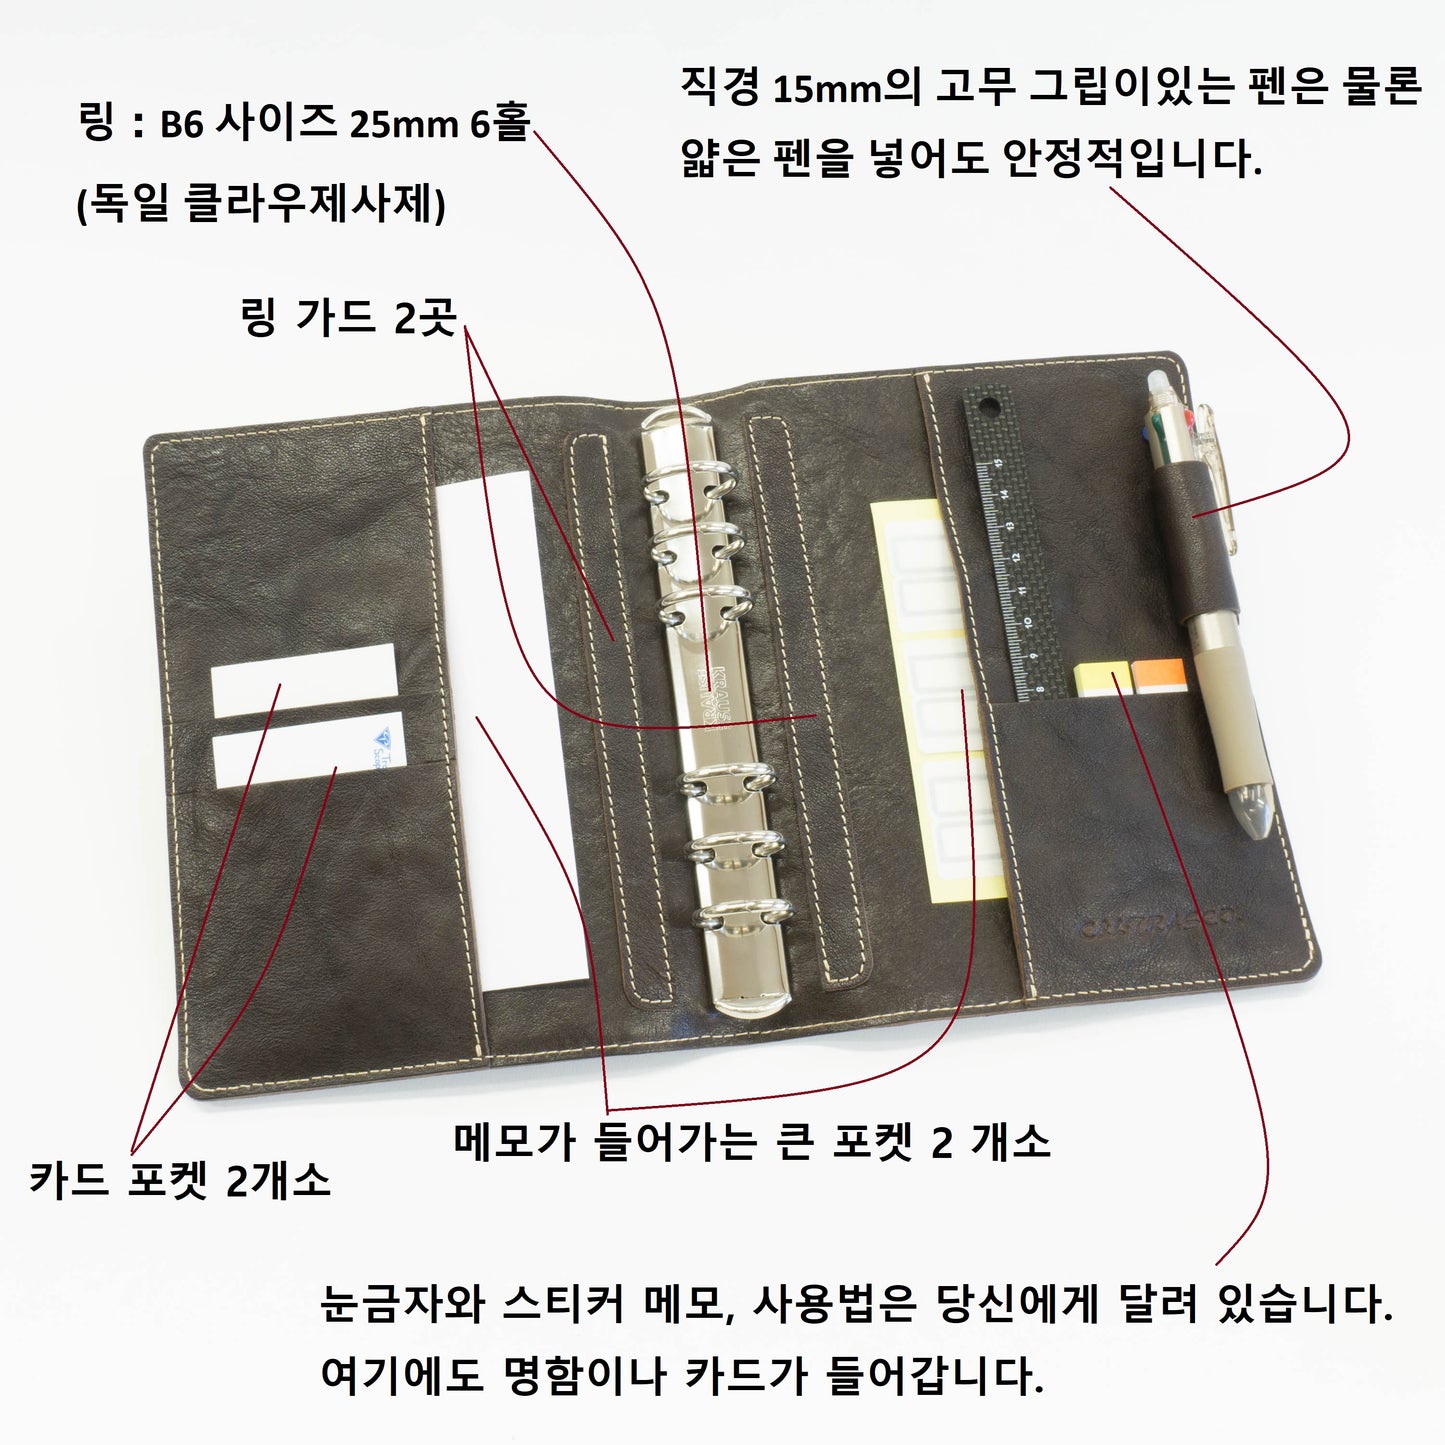 【日本工匠完成收缩】系统笔记本B6/圣经尺寸25mm环6孔